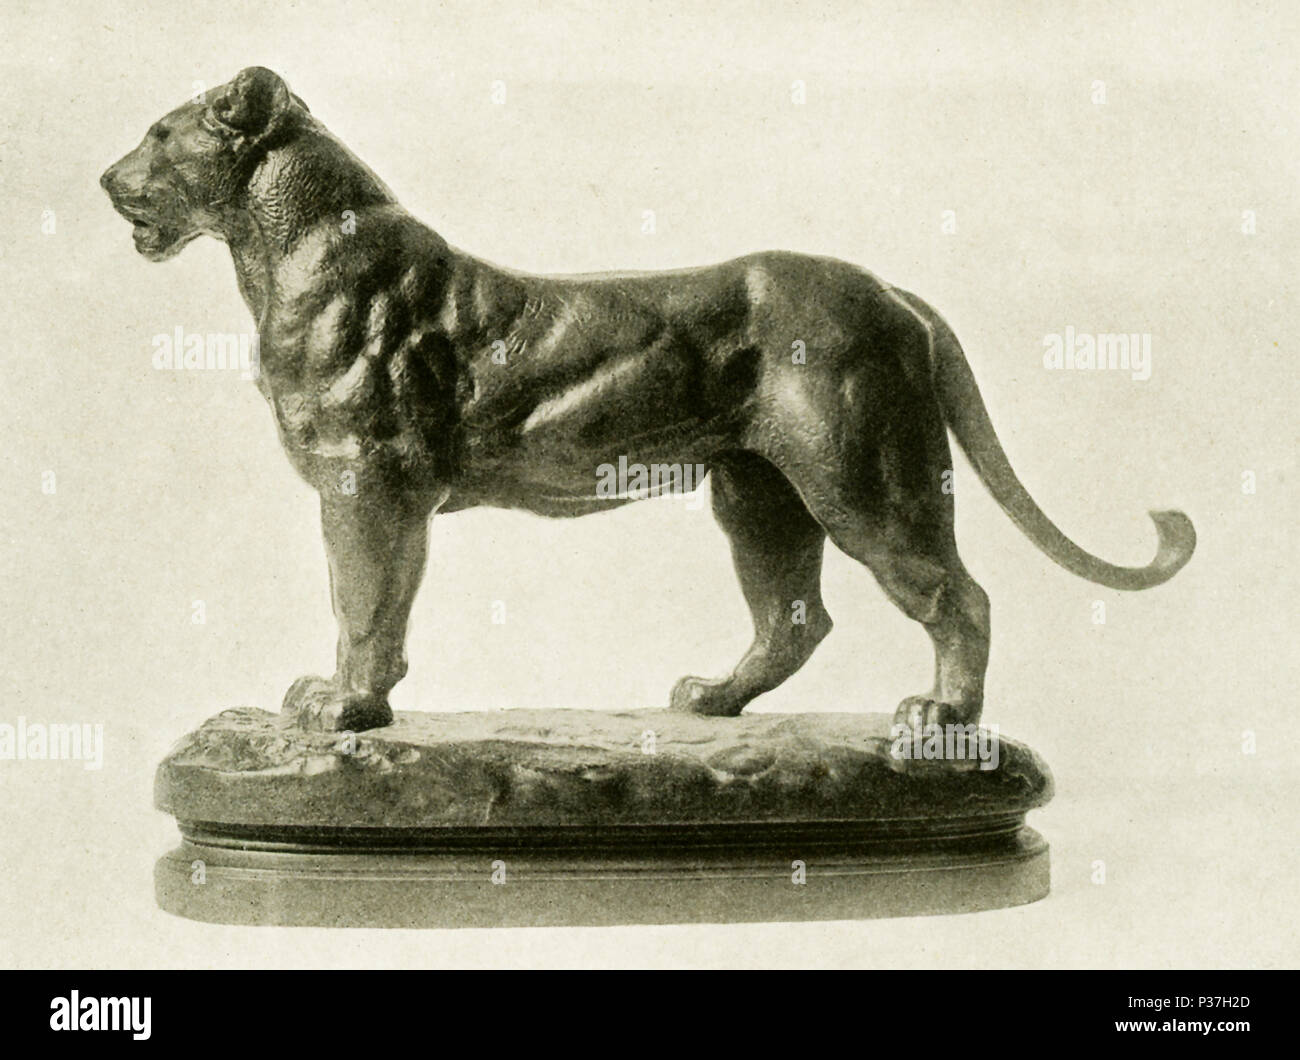 Antoine Louis Barye (1795-1875) était un sculpteur français romantique. Il  est surtout connu comme un sculpteur d'animaux (par conséquent, un animalier).  Cette sculpture en bronze de Barye est intitulé "Une lionne" et